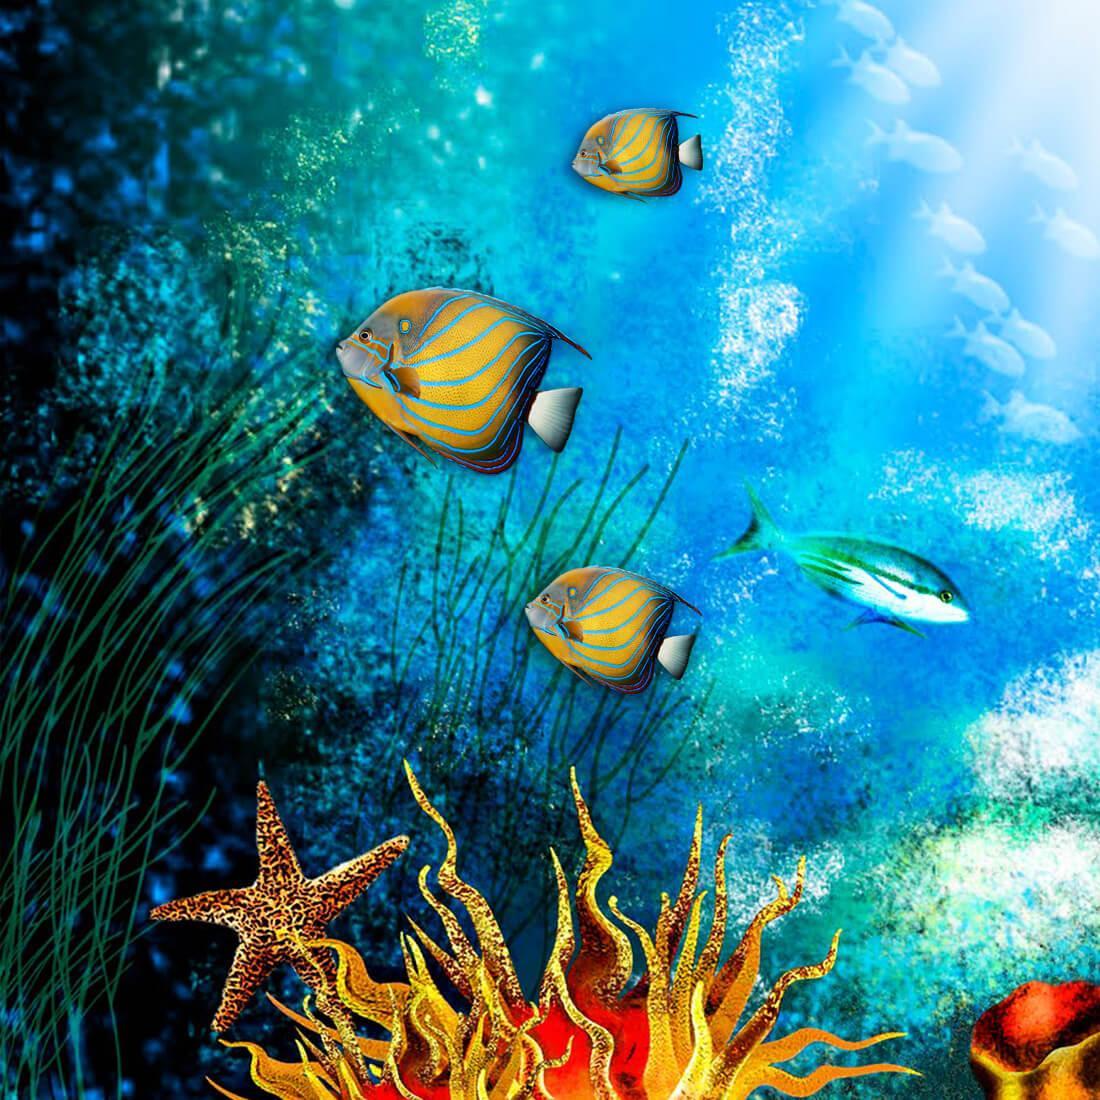  Aquarium Hintergrundbild 1100x1100. Aquarium Hintergrundbilder APK für Android herunterladen